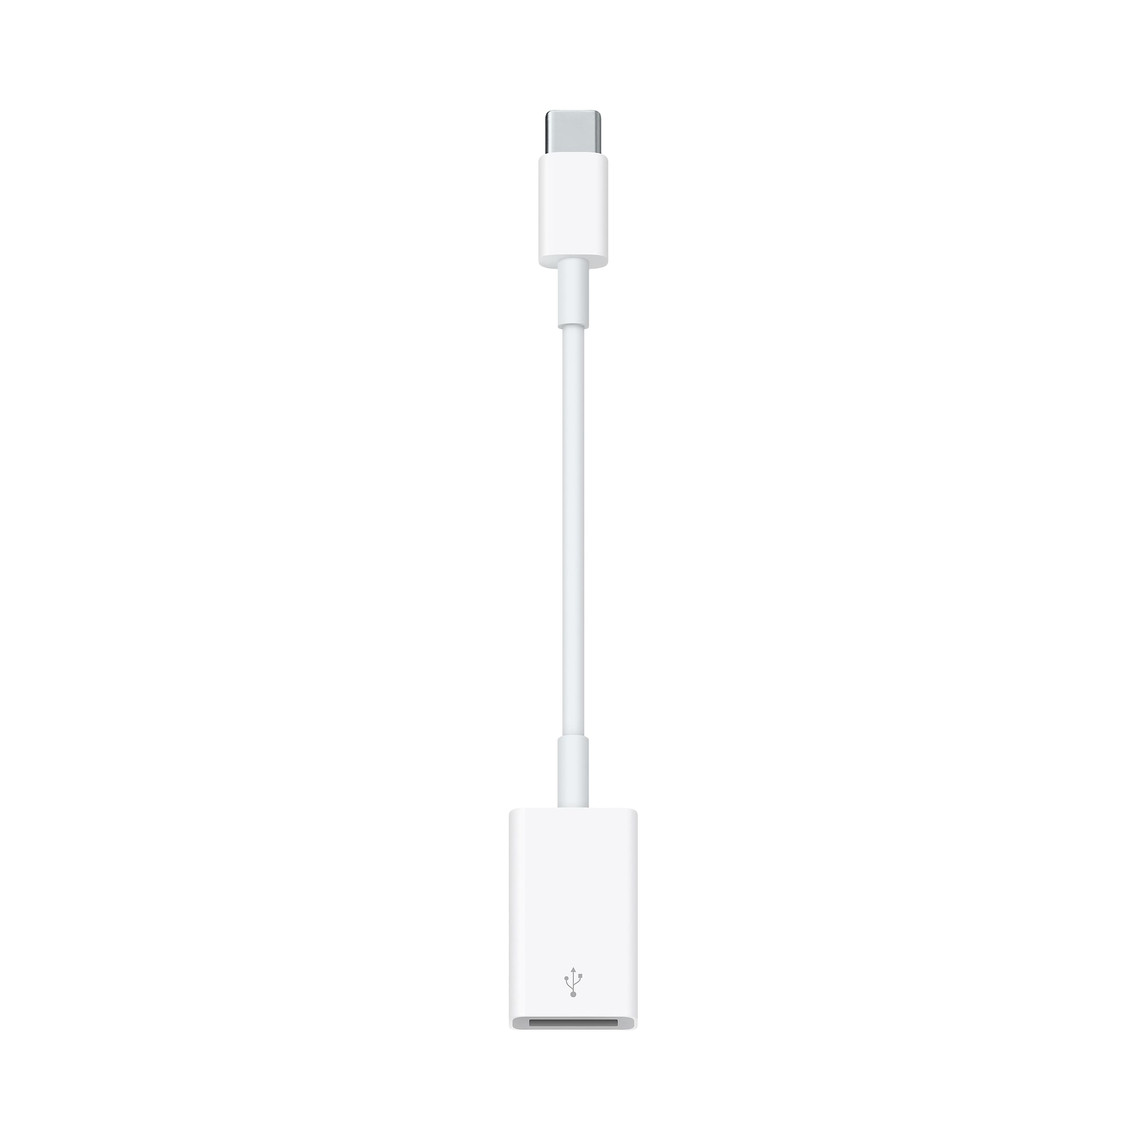 อะแดปเตอร์ USB-C เป็น USB ให้คุณเชื่อมต่ออุปกรณ์ iOS และอุปกรณ์เสริม USB แบบมาตรฐานกับ Mac ที่รองรับ USB-C หรือ Thunderbolt 3 (USB-C)